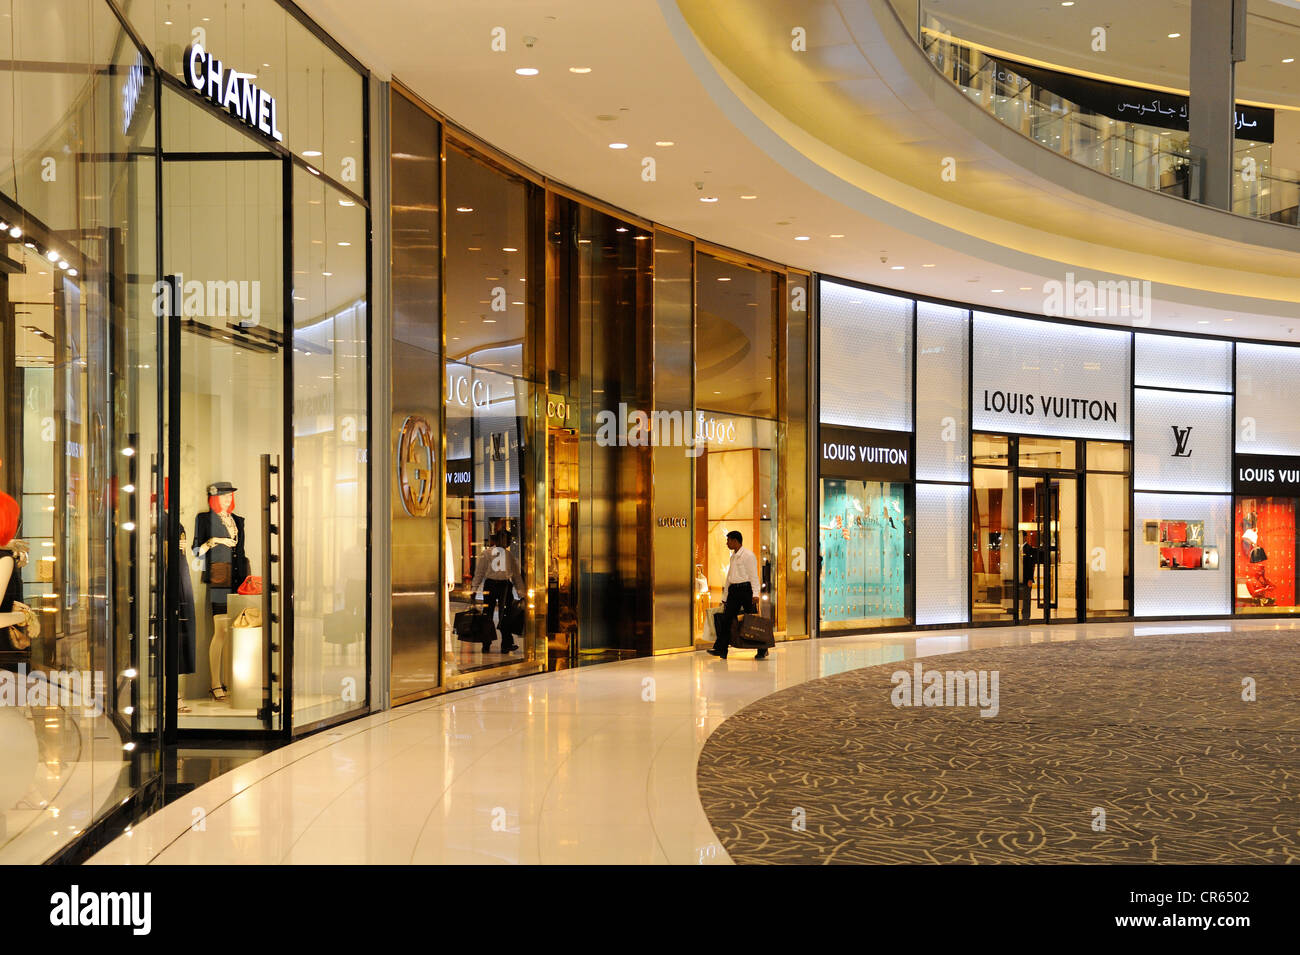 Louis Vuitton, Chanel, Gucci, en la Avenida de la moda, con 70 tiendas de  la marca mundial de la Haute Couture, Mall Fotografía de stock - Alamy